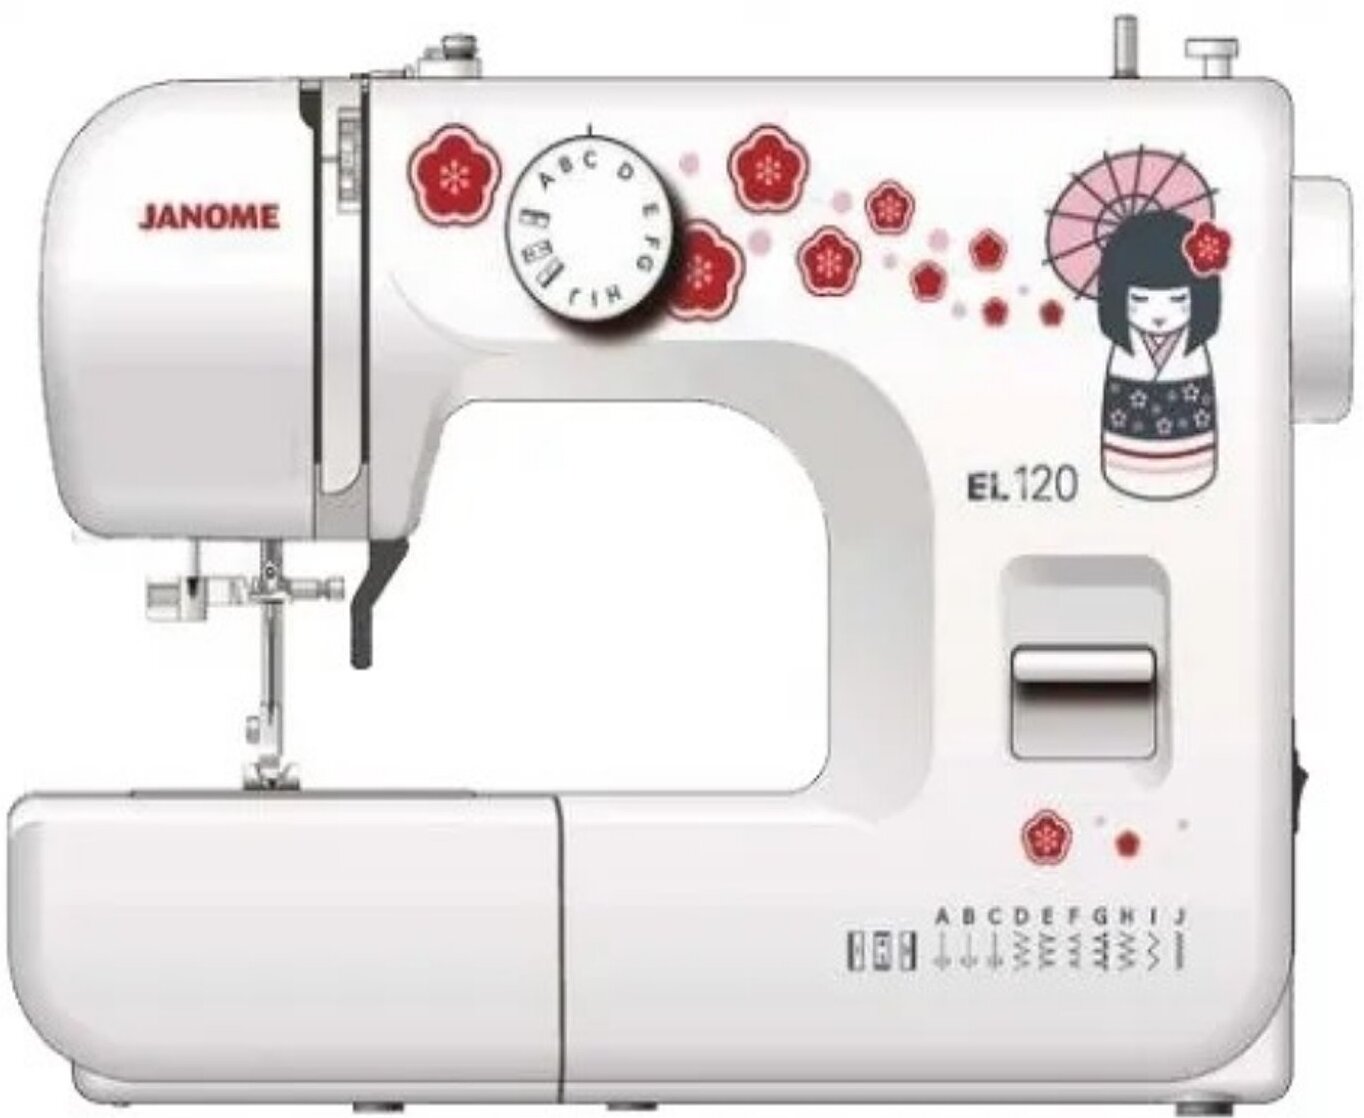 Машинка janome обзор. Швейная машина Janome el-120. Швейная машина Janome TC 1216s. Швейная машина Janome sk13. Швейная машина Janome el5465.